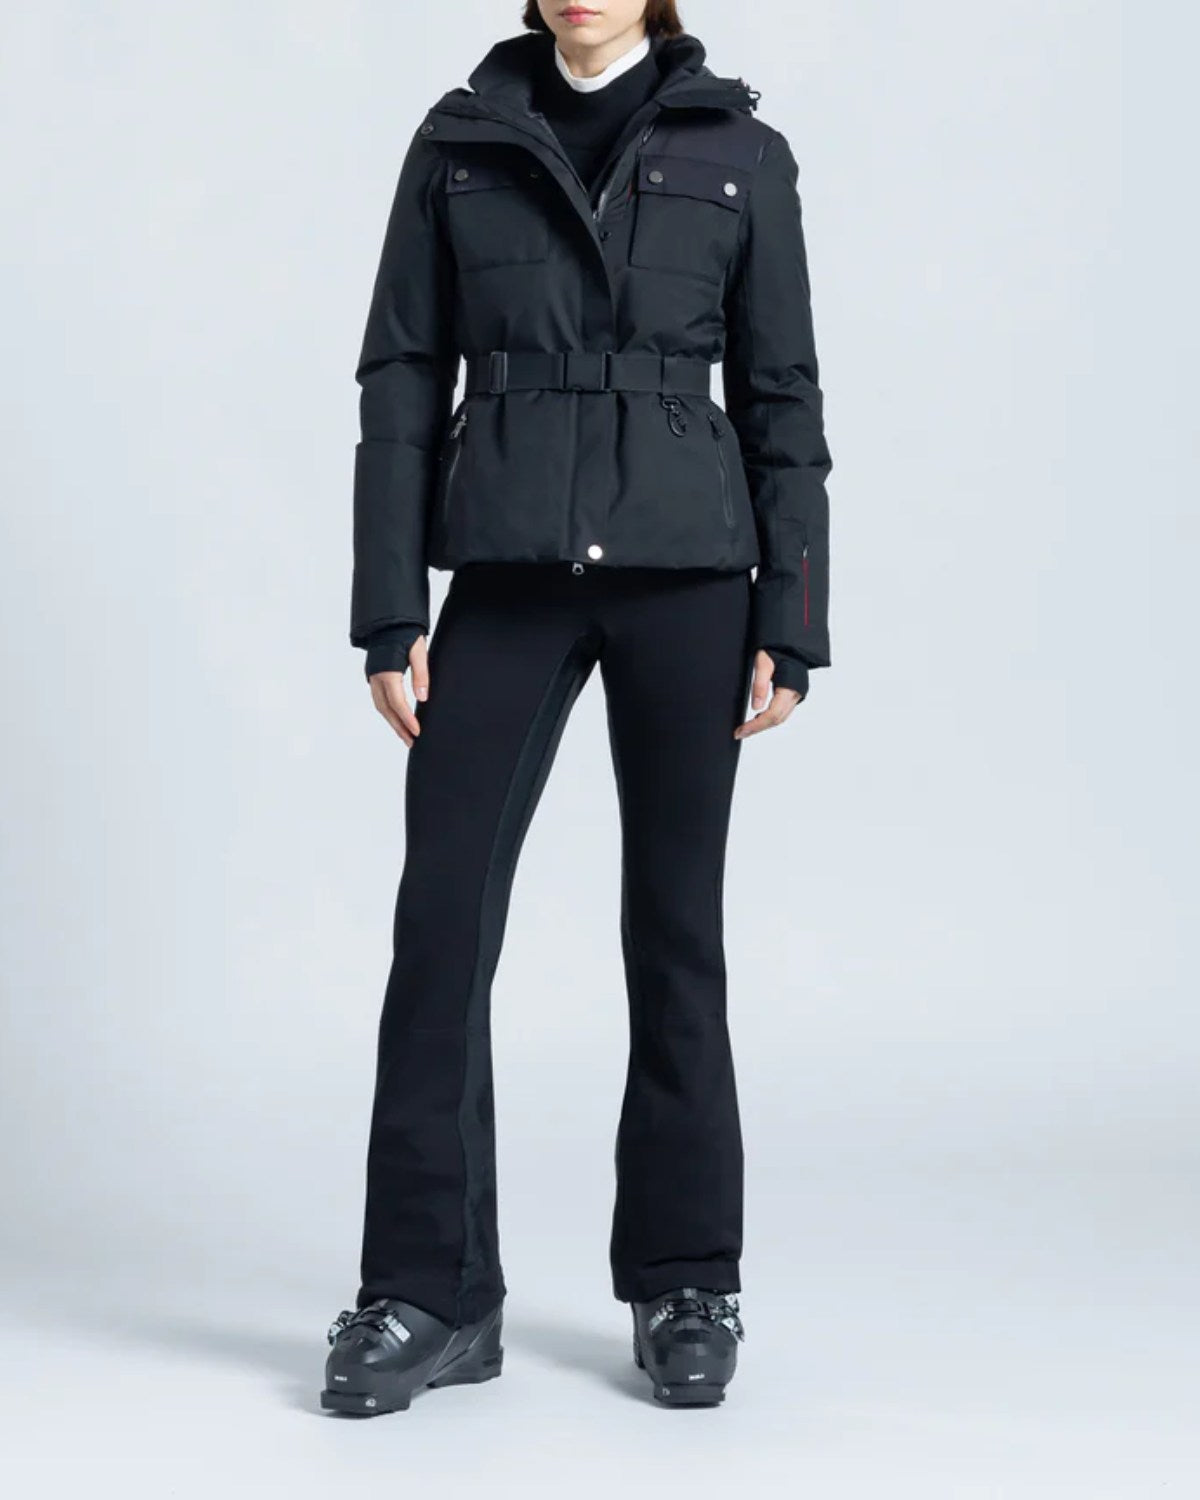 ERIN SNOW Diana 20 Jacket in Eco Sporty